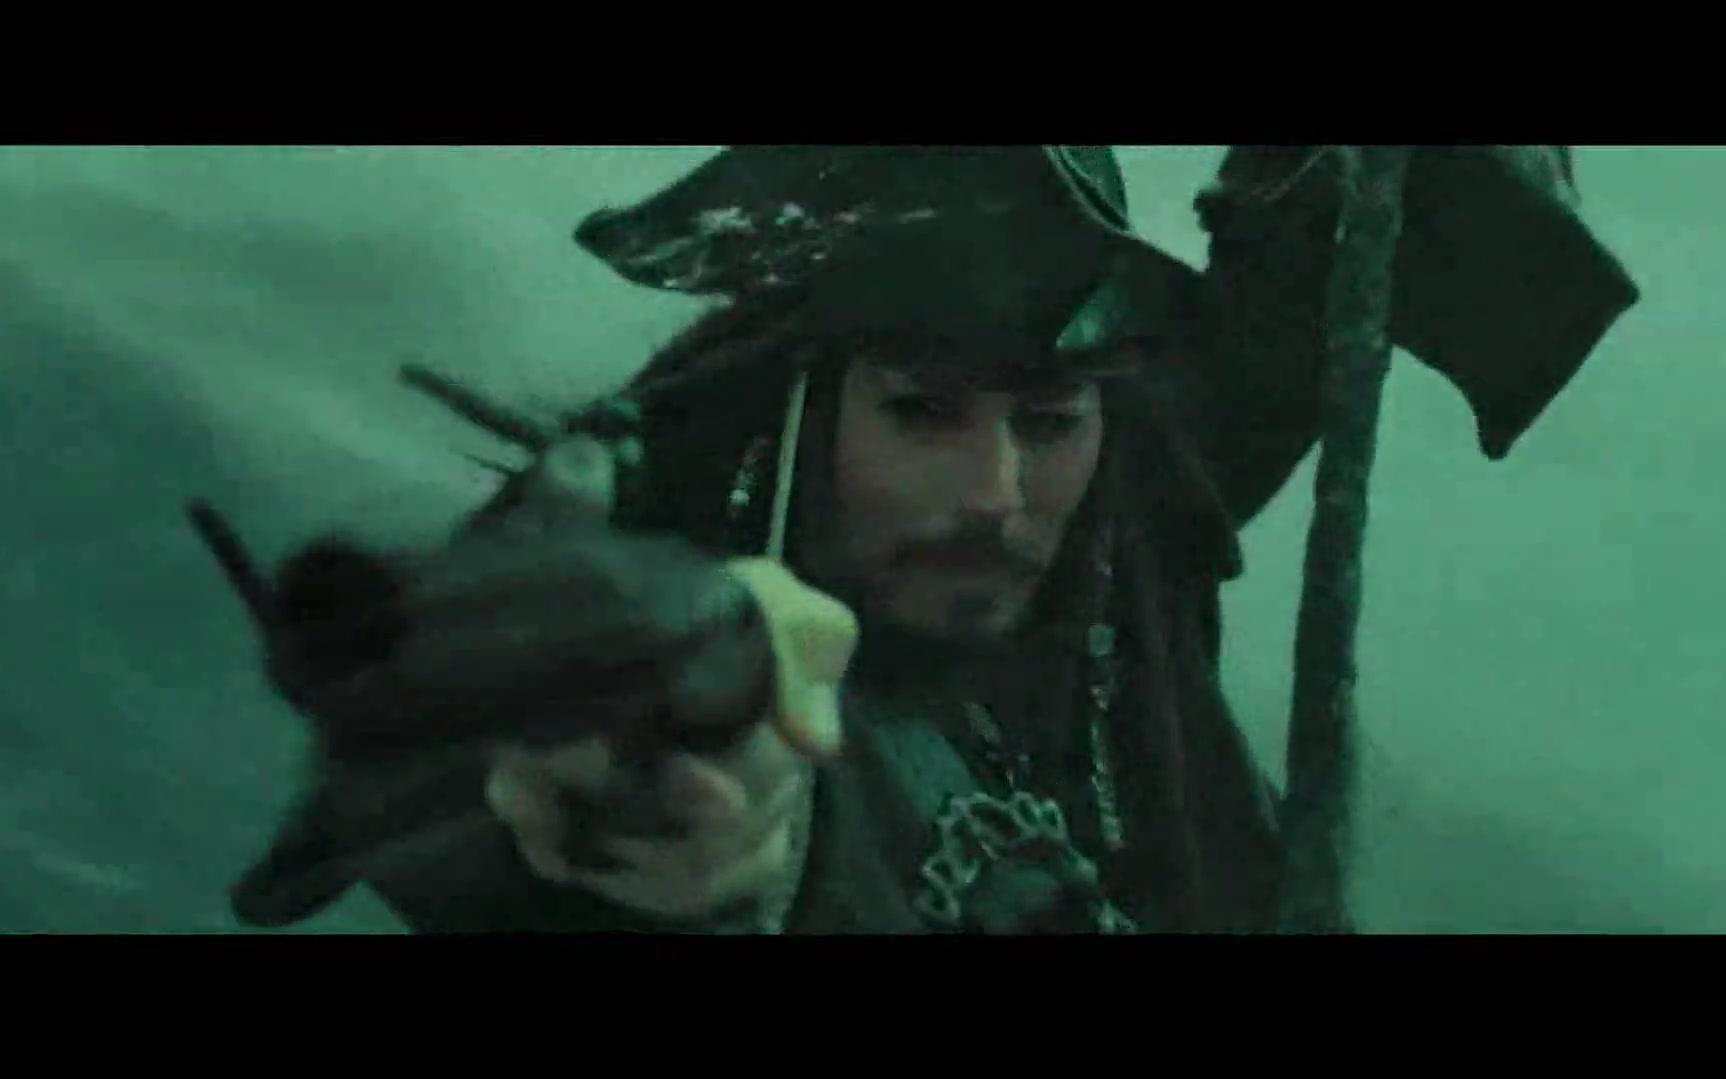 【混剪】【高燃】加勒比海盗 He is a pirate